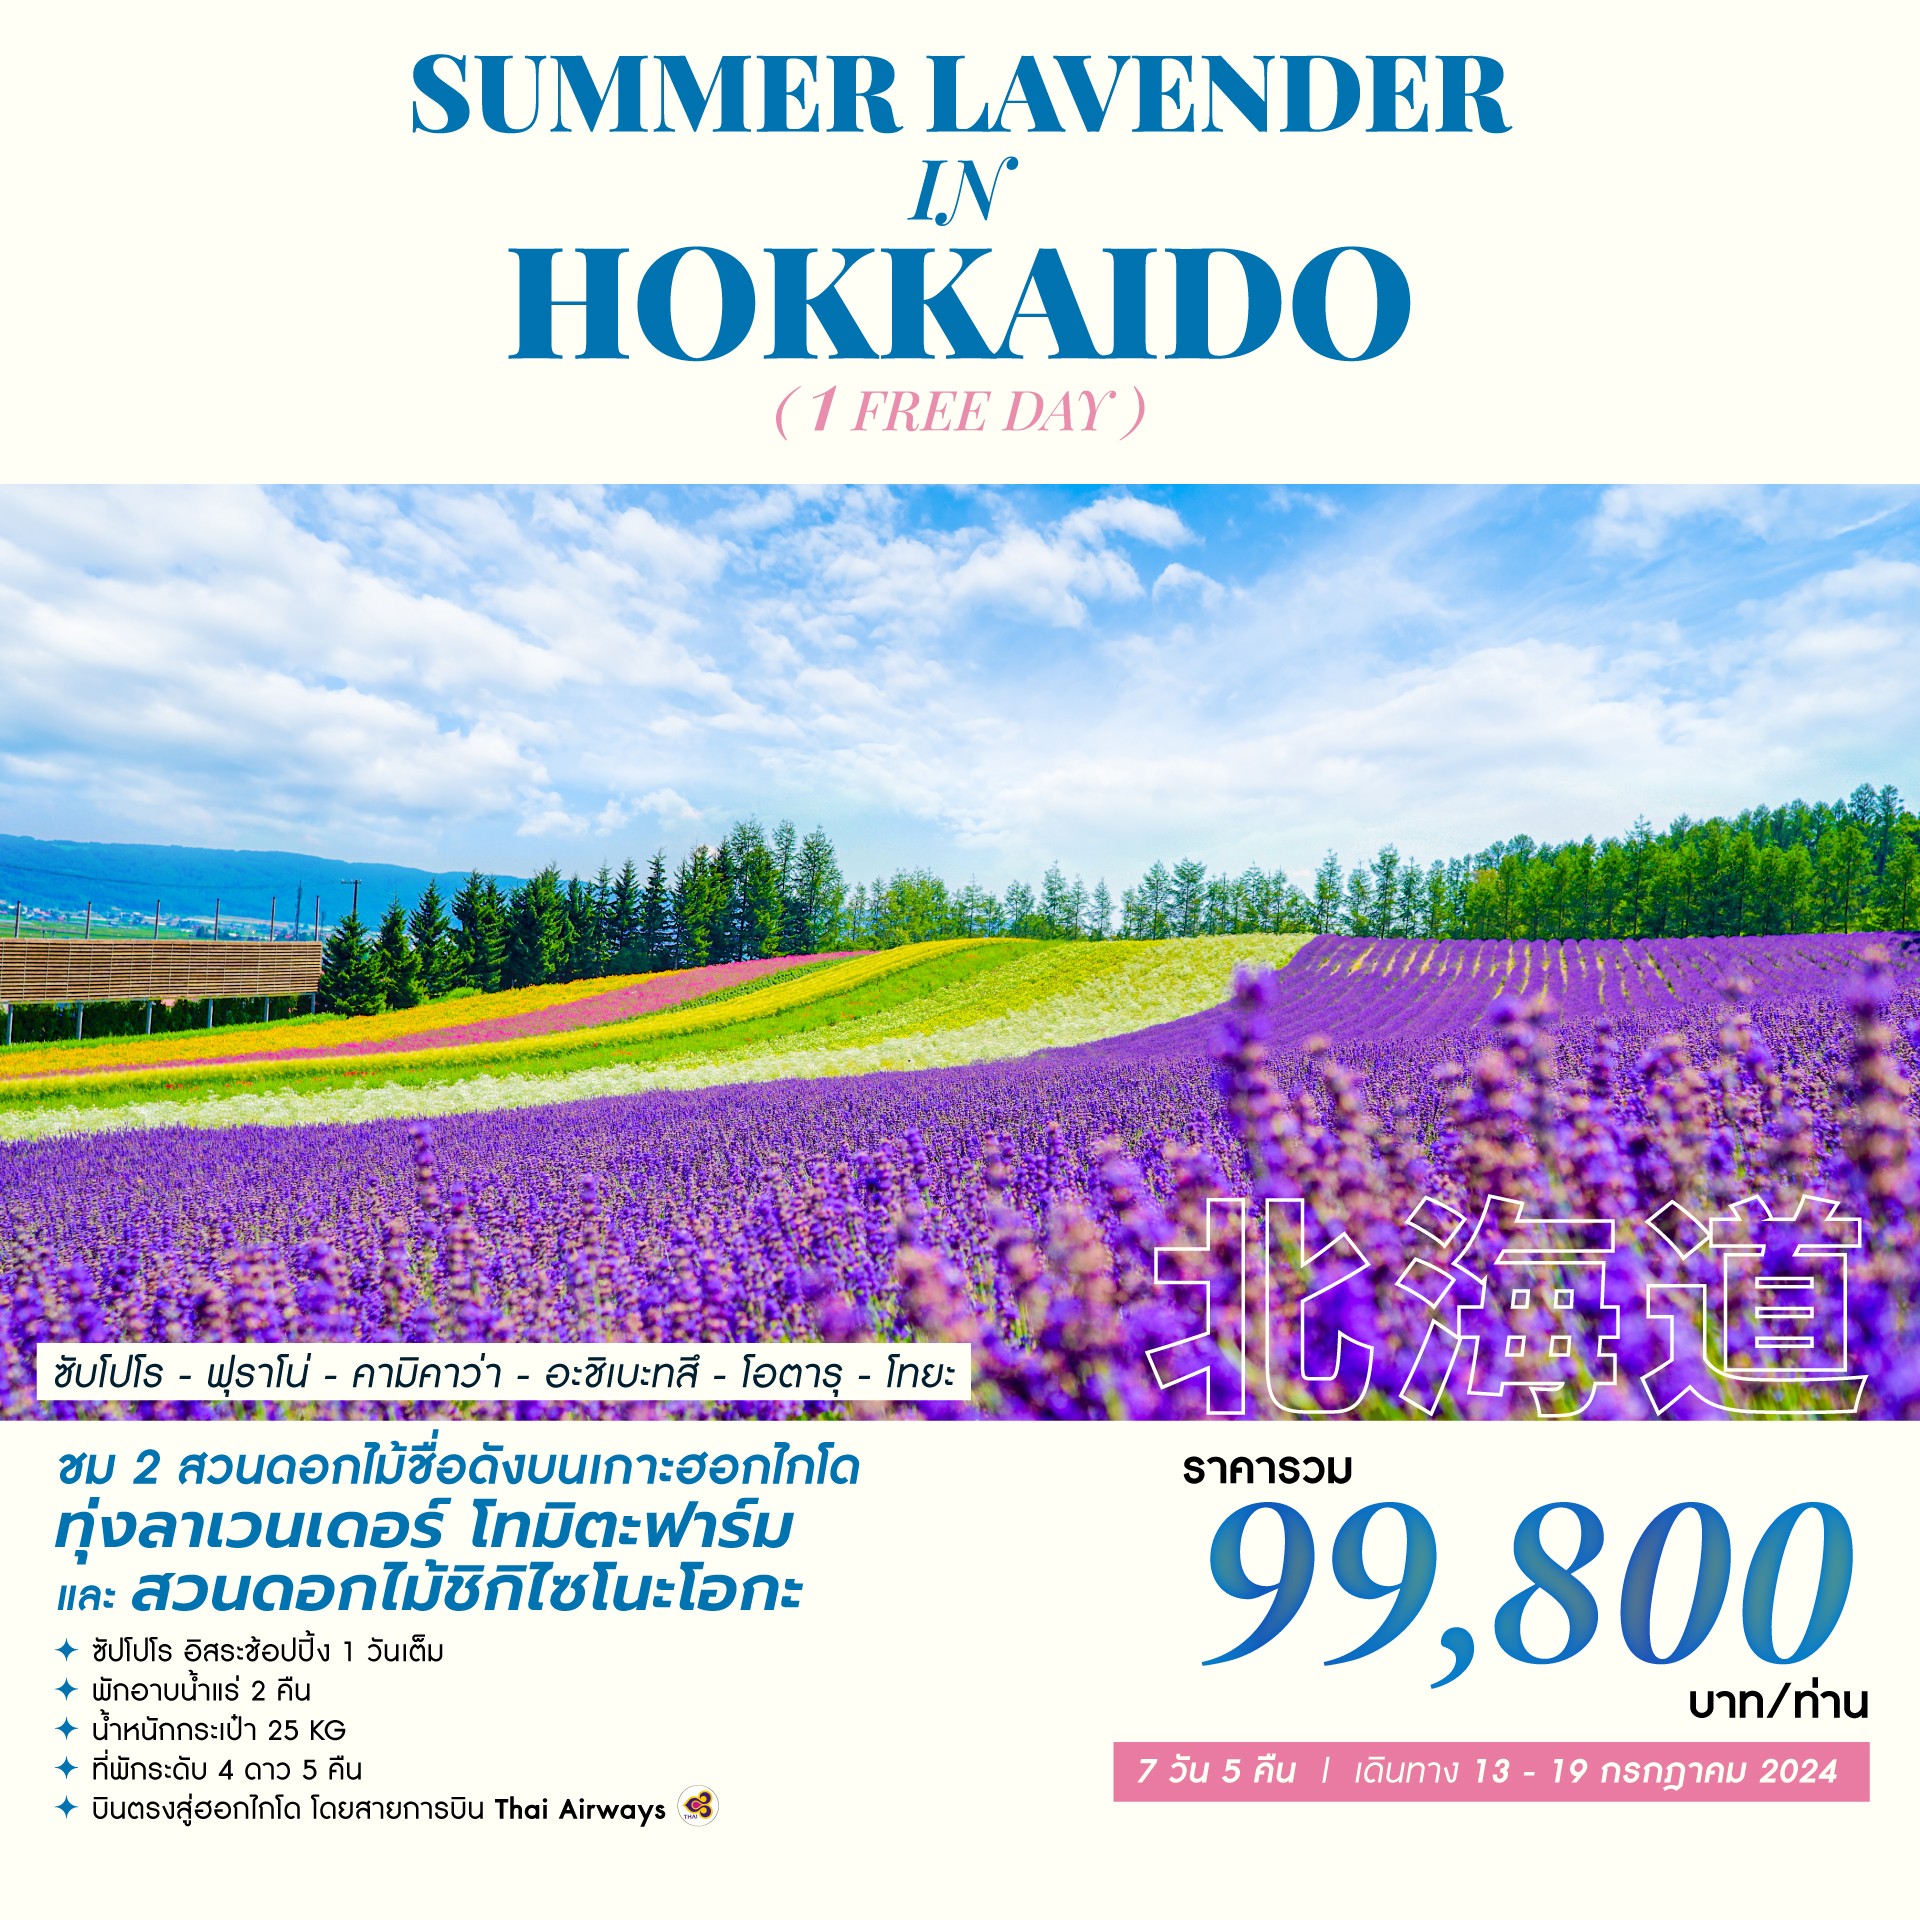 ทัวร์ญี่ปุ่น SUMMER LAVENDER IN HOKKAIDO 7วัน 5คืน (TG)